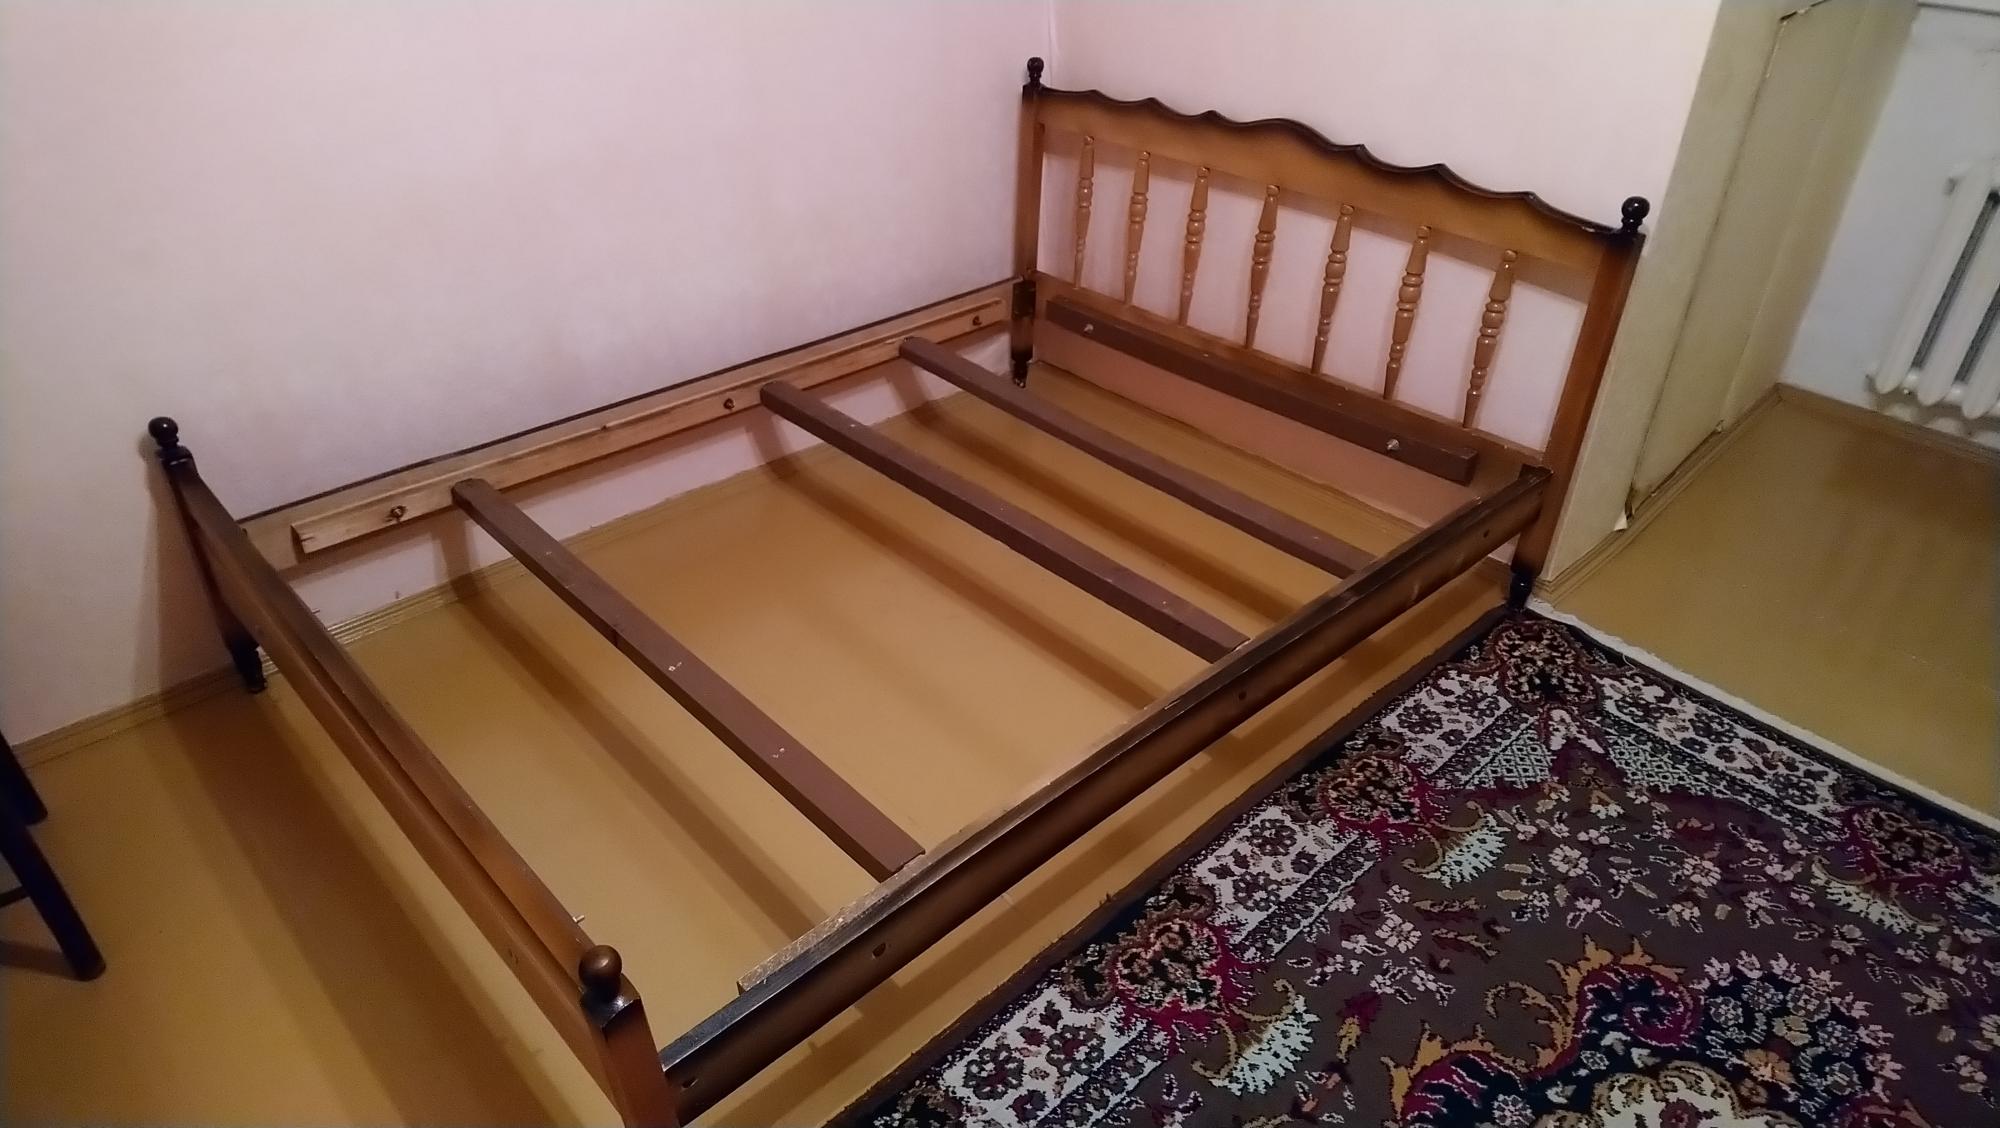 Продать кровать б у. Кровати б/у размер 140. Авито кровать. Кровати на авито б/у. Кровати на авито в Москве б у.